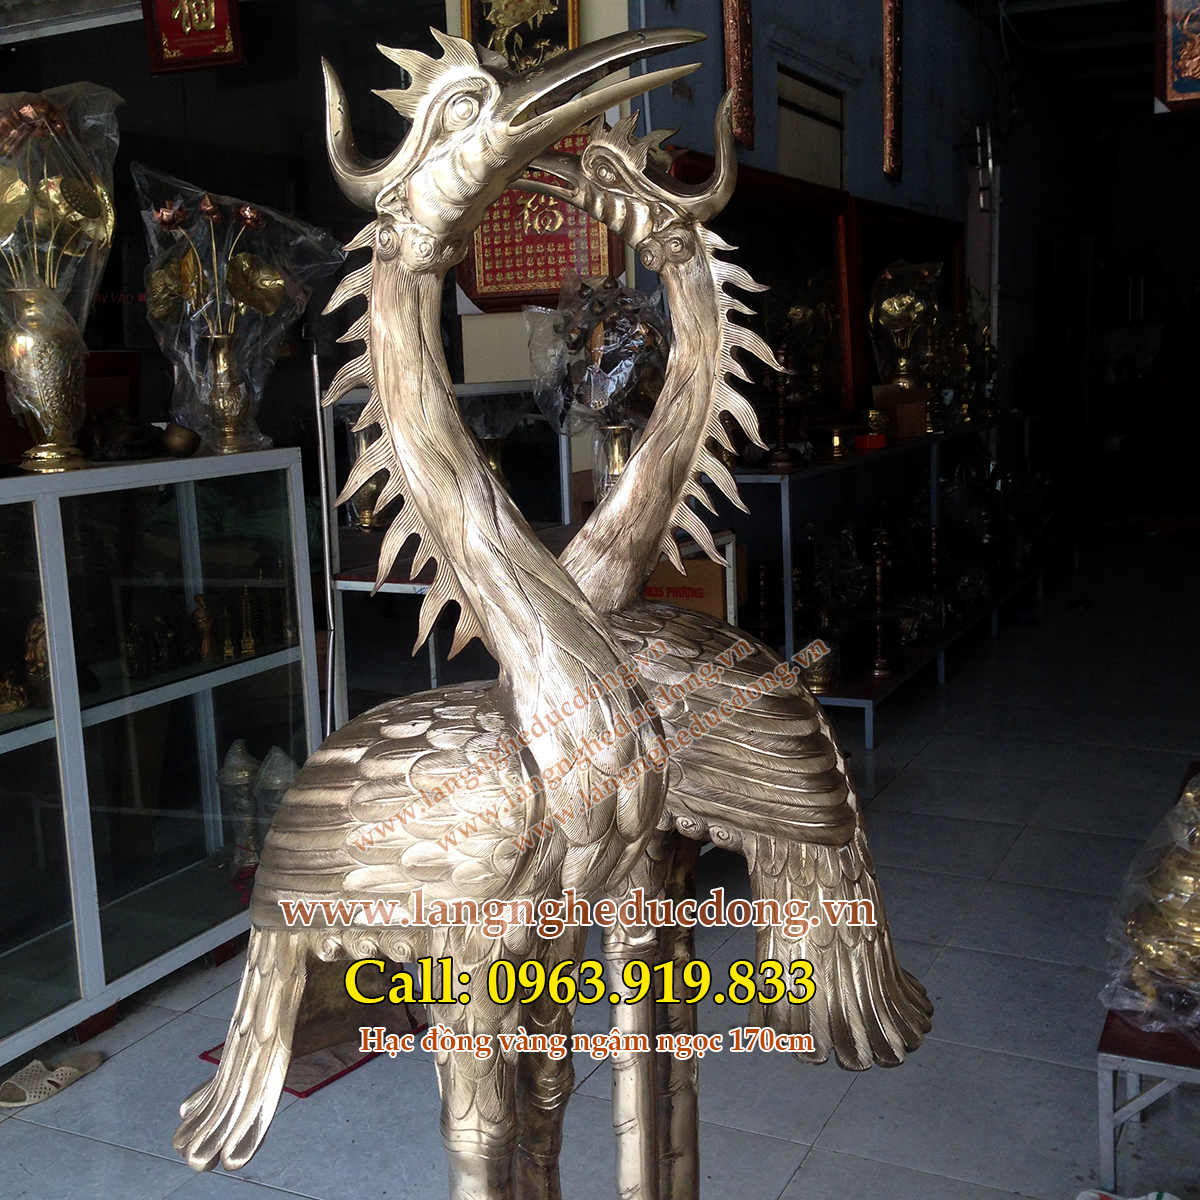 langngheducdong.vn - Hạc đồng thờ cúng, hạc thờ cao 170cm